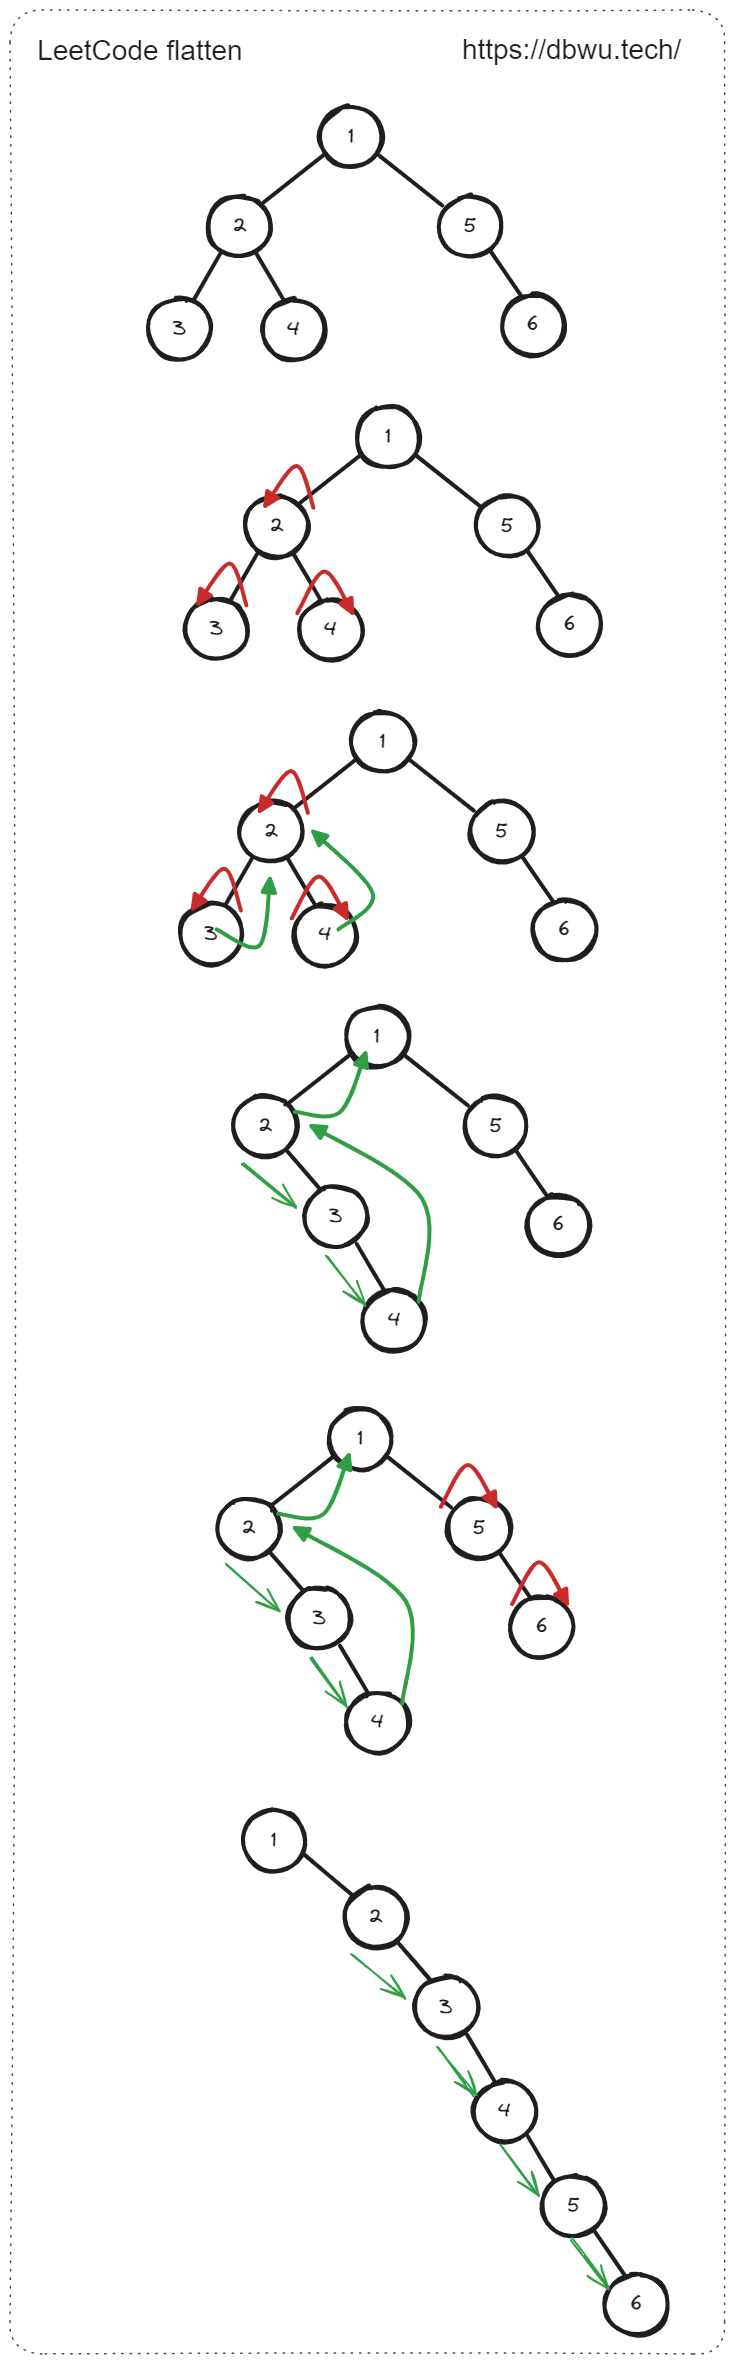 二叉树展开为链表 - 代码执行过程